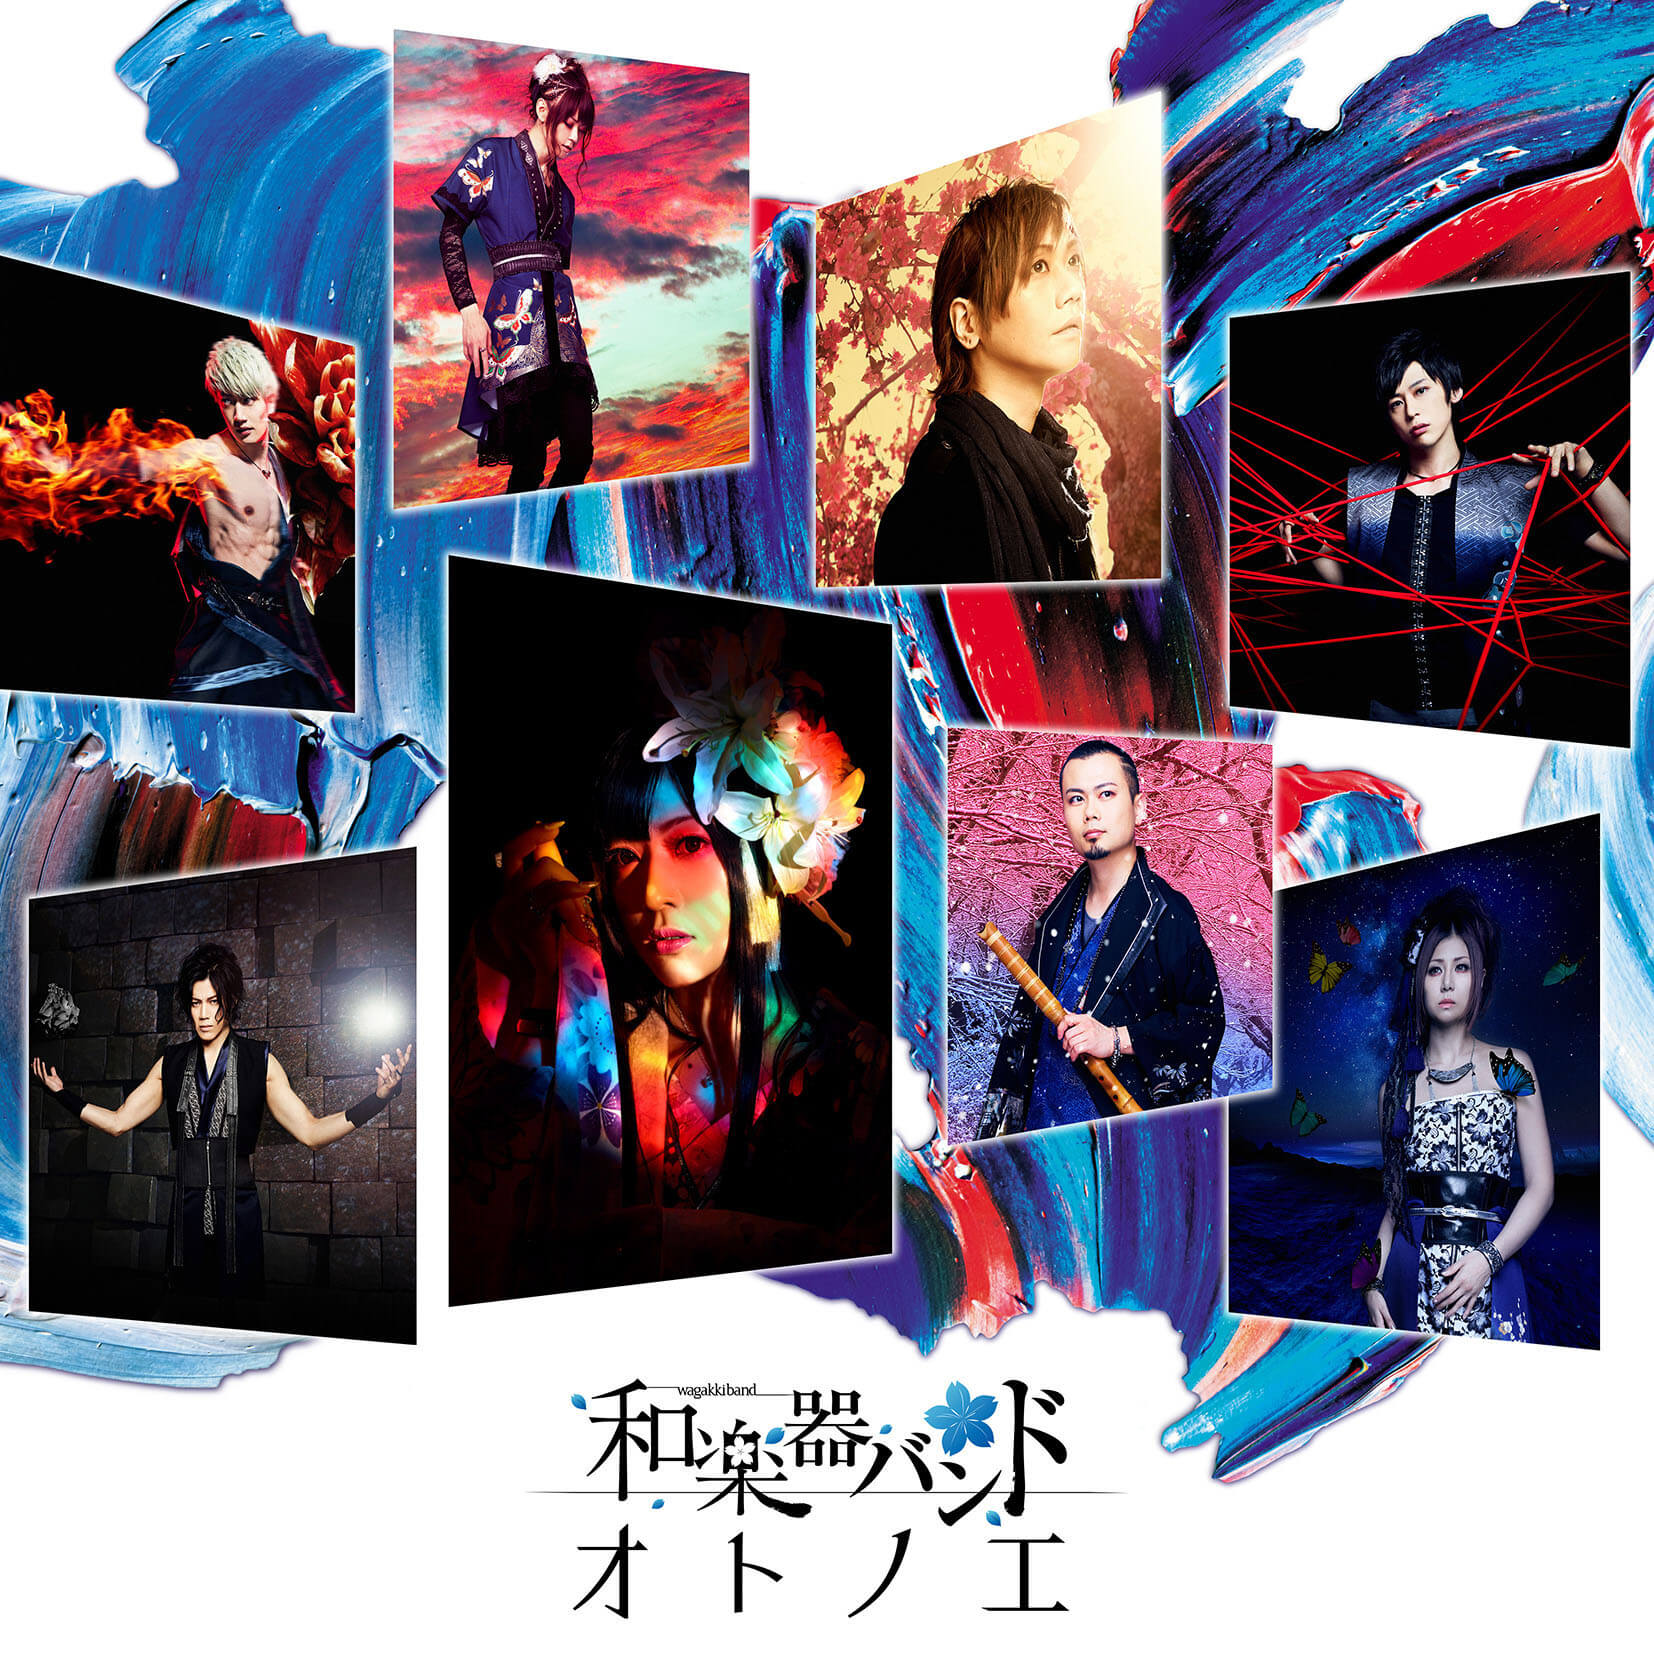 Wagakki Band Release Music Video For Sabaku No Komori Uta Sasame Yuki For Piano And Symphonic Orchestra Moshi Moshi Nippon もしもしにっぽん